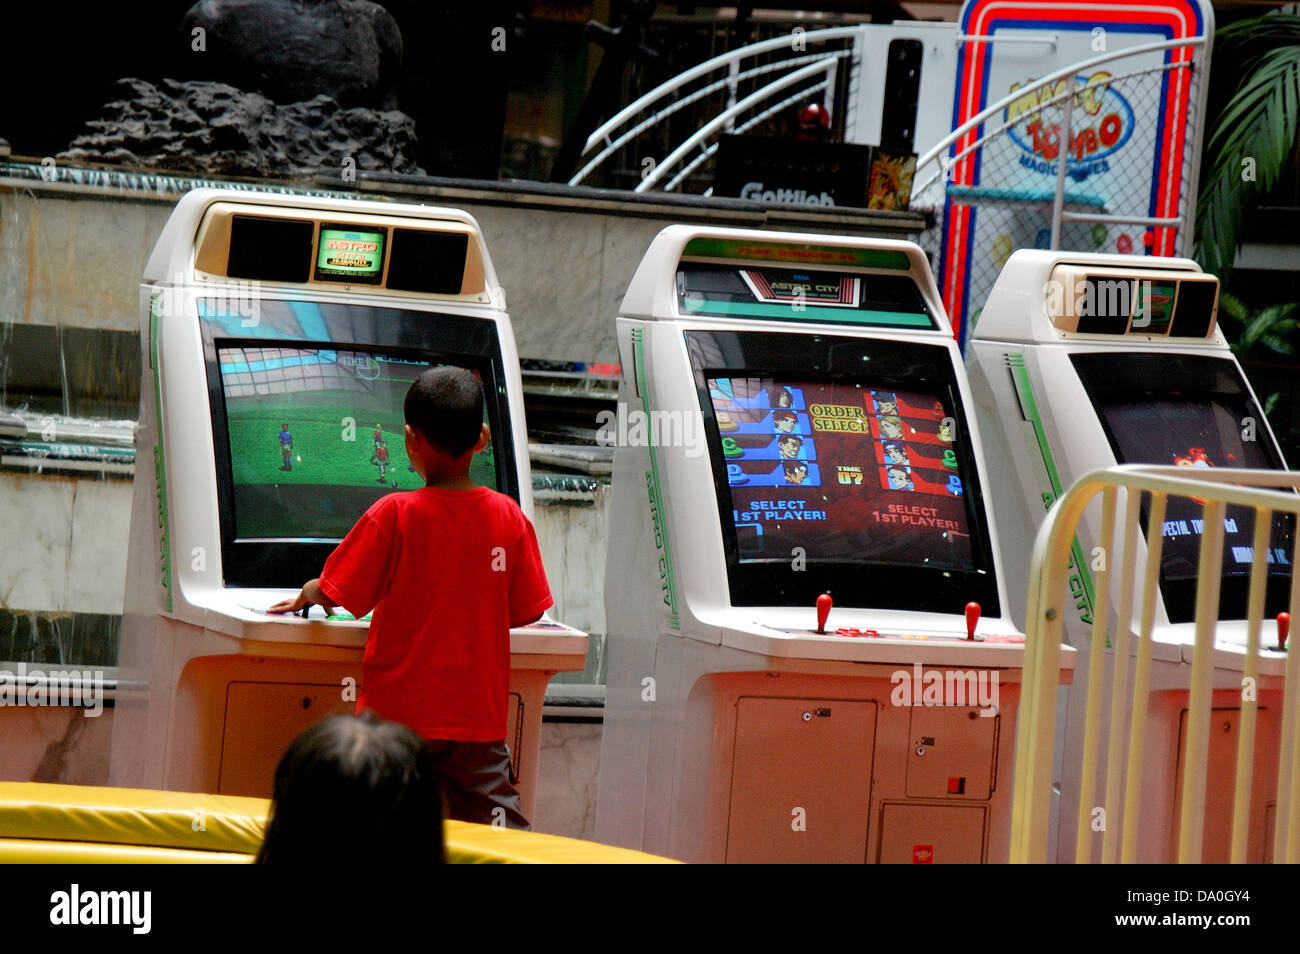 Les enfants jouer à des jeux sur ordinateur un indise play house à un centre commercial Banque D'Images